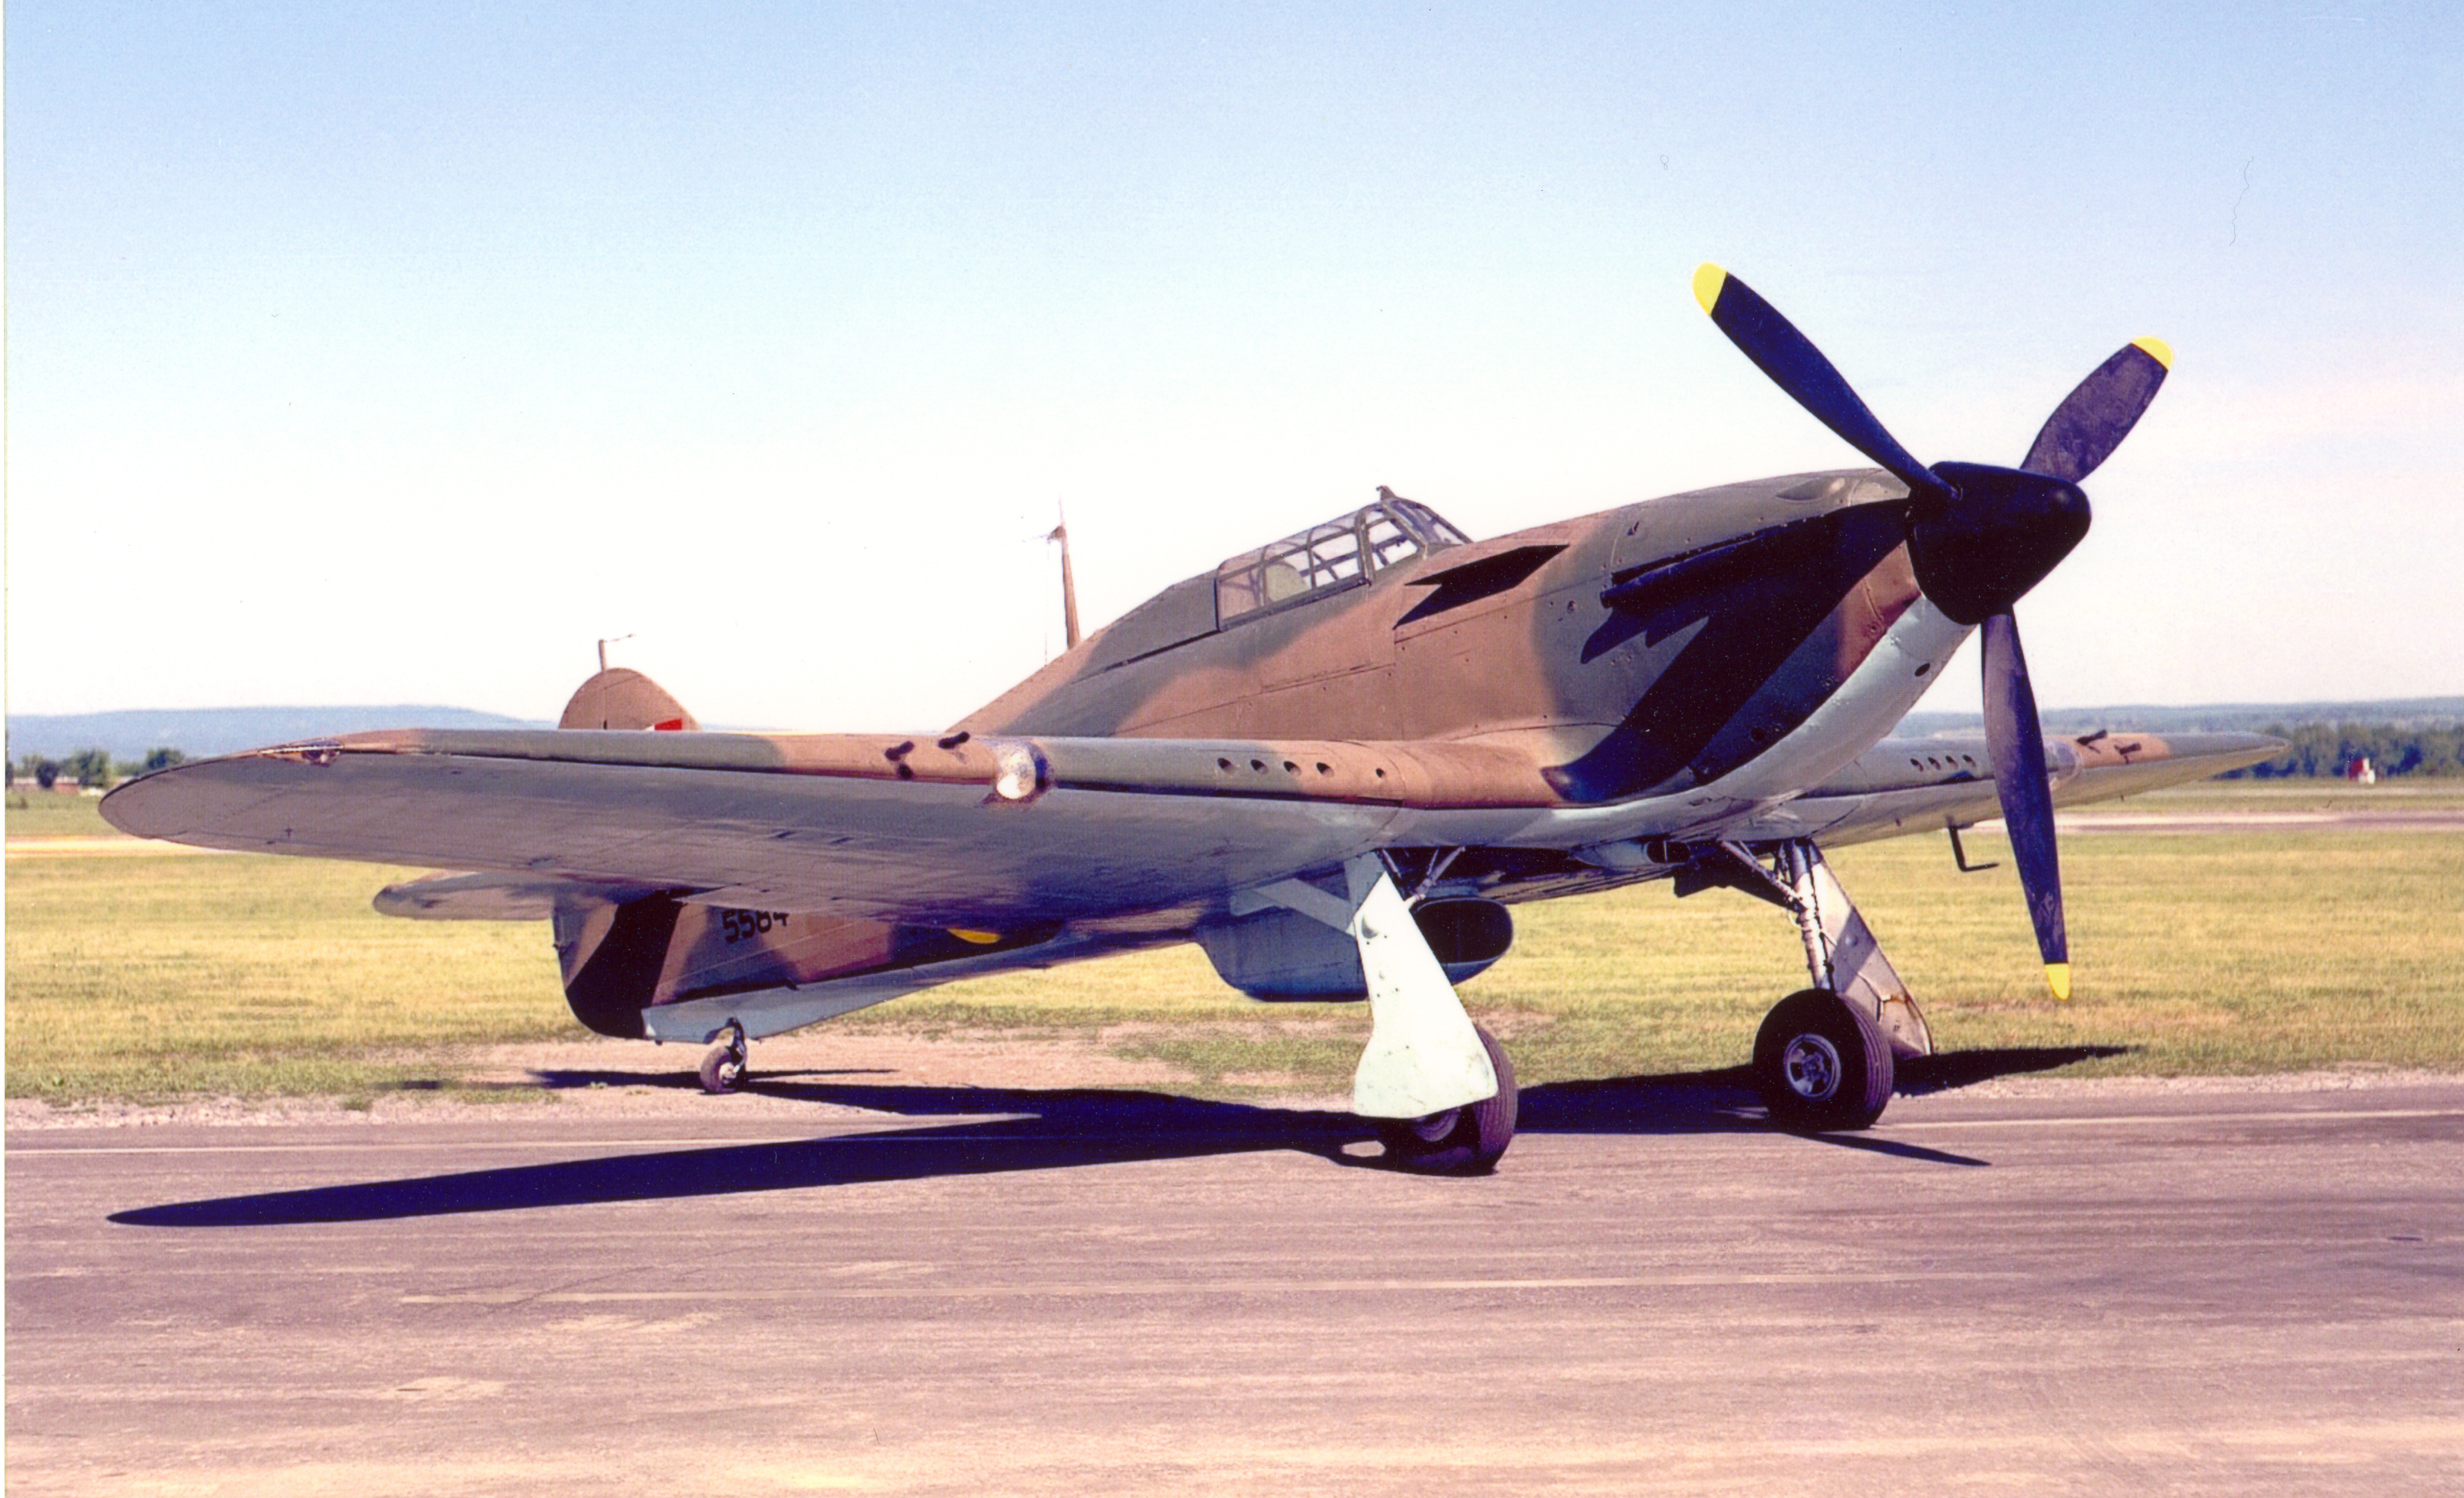 Le Hawker Hurricane est le premier chasseur dont se sert la Royal Air Force au début de la Seconde Guerre mondiale. Lorsque la guerre éclate, le Hurricane est aussi le seul chasseur moderne de l’ARC. Le Hurricane ci-dessus a été conservé par le Musée de l’aviation et de l’espace du Canada.